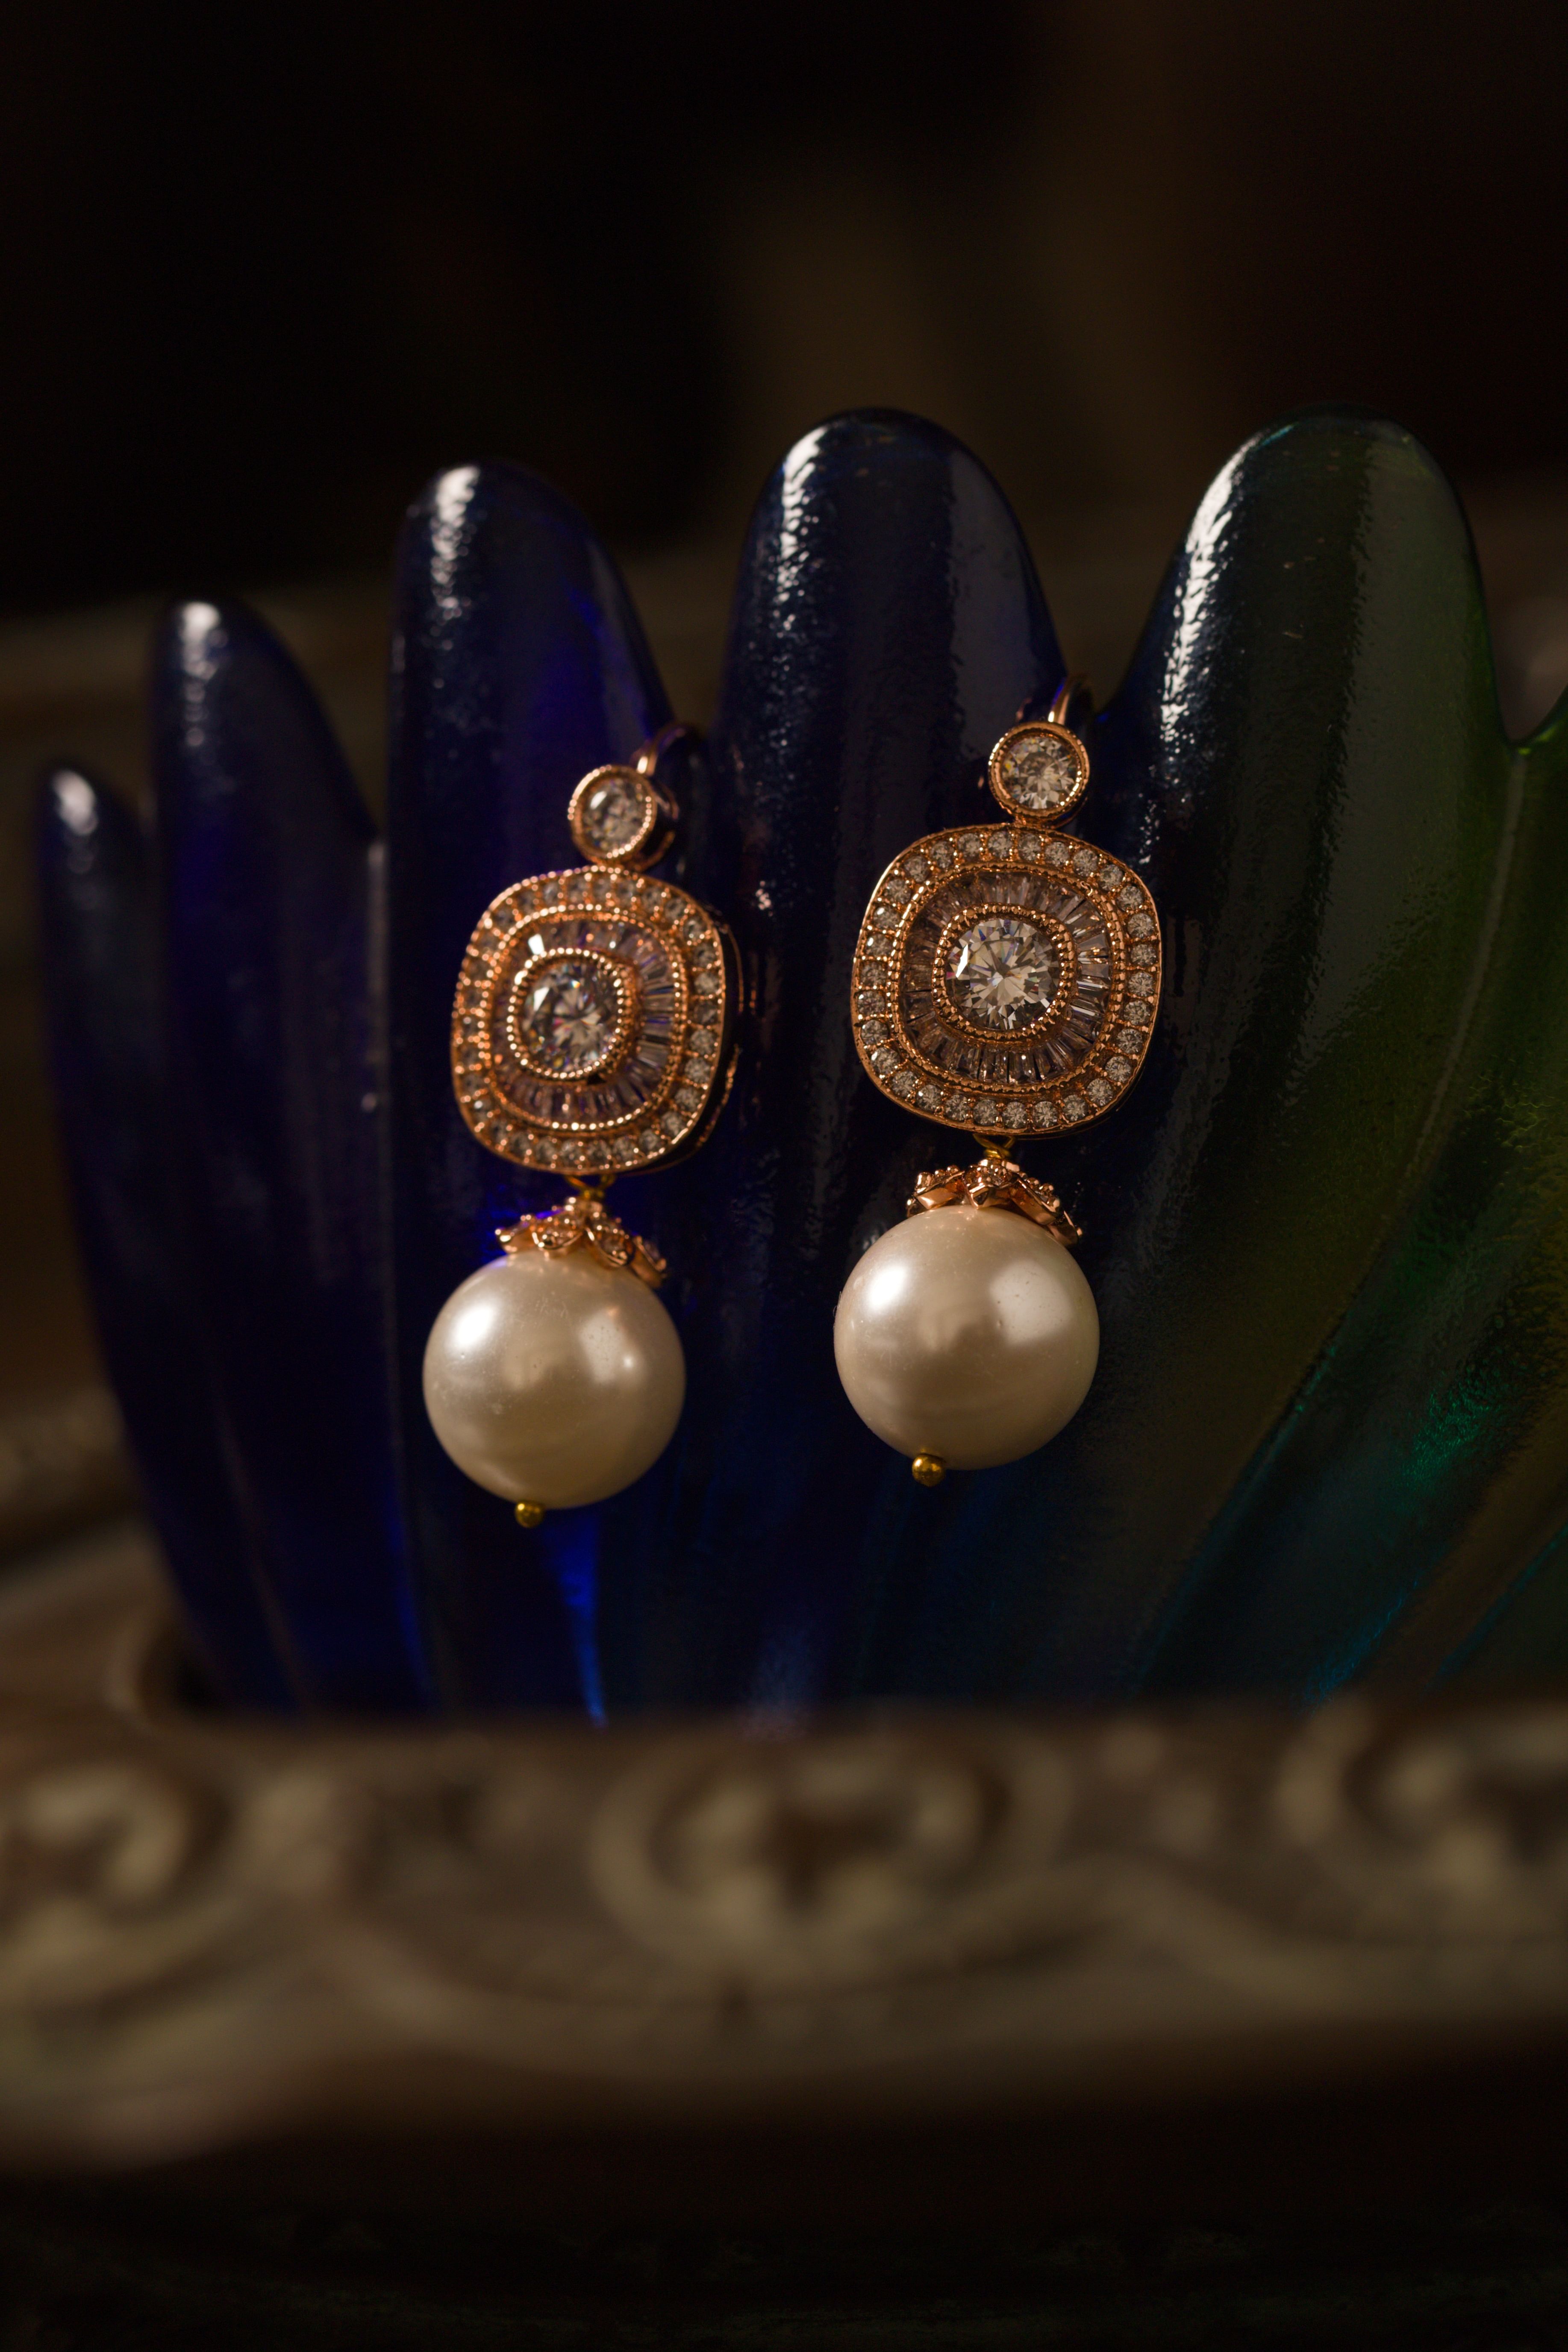 Shop Latest White Pearl Earrings Online | Pearl Jewelry| Kalyan